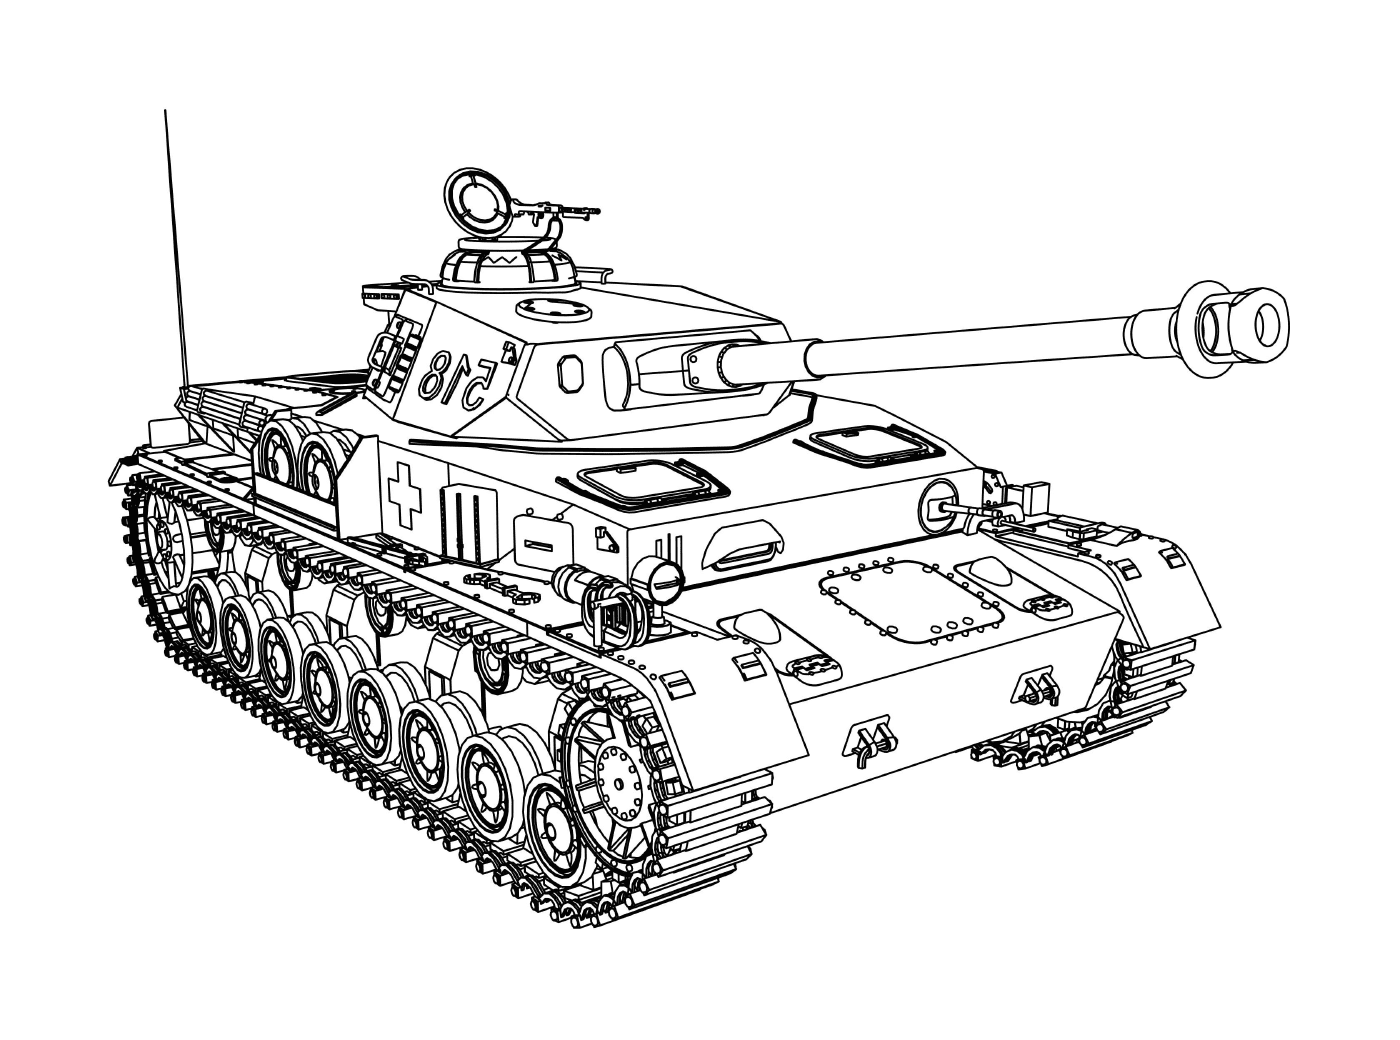  Военное транспортное средство: старый военный танк 